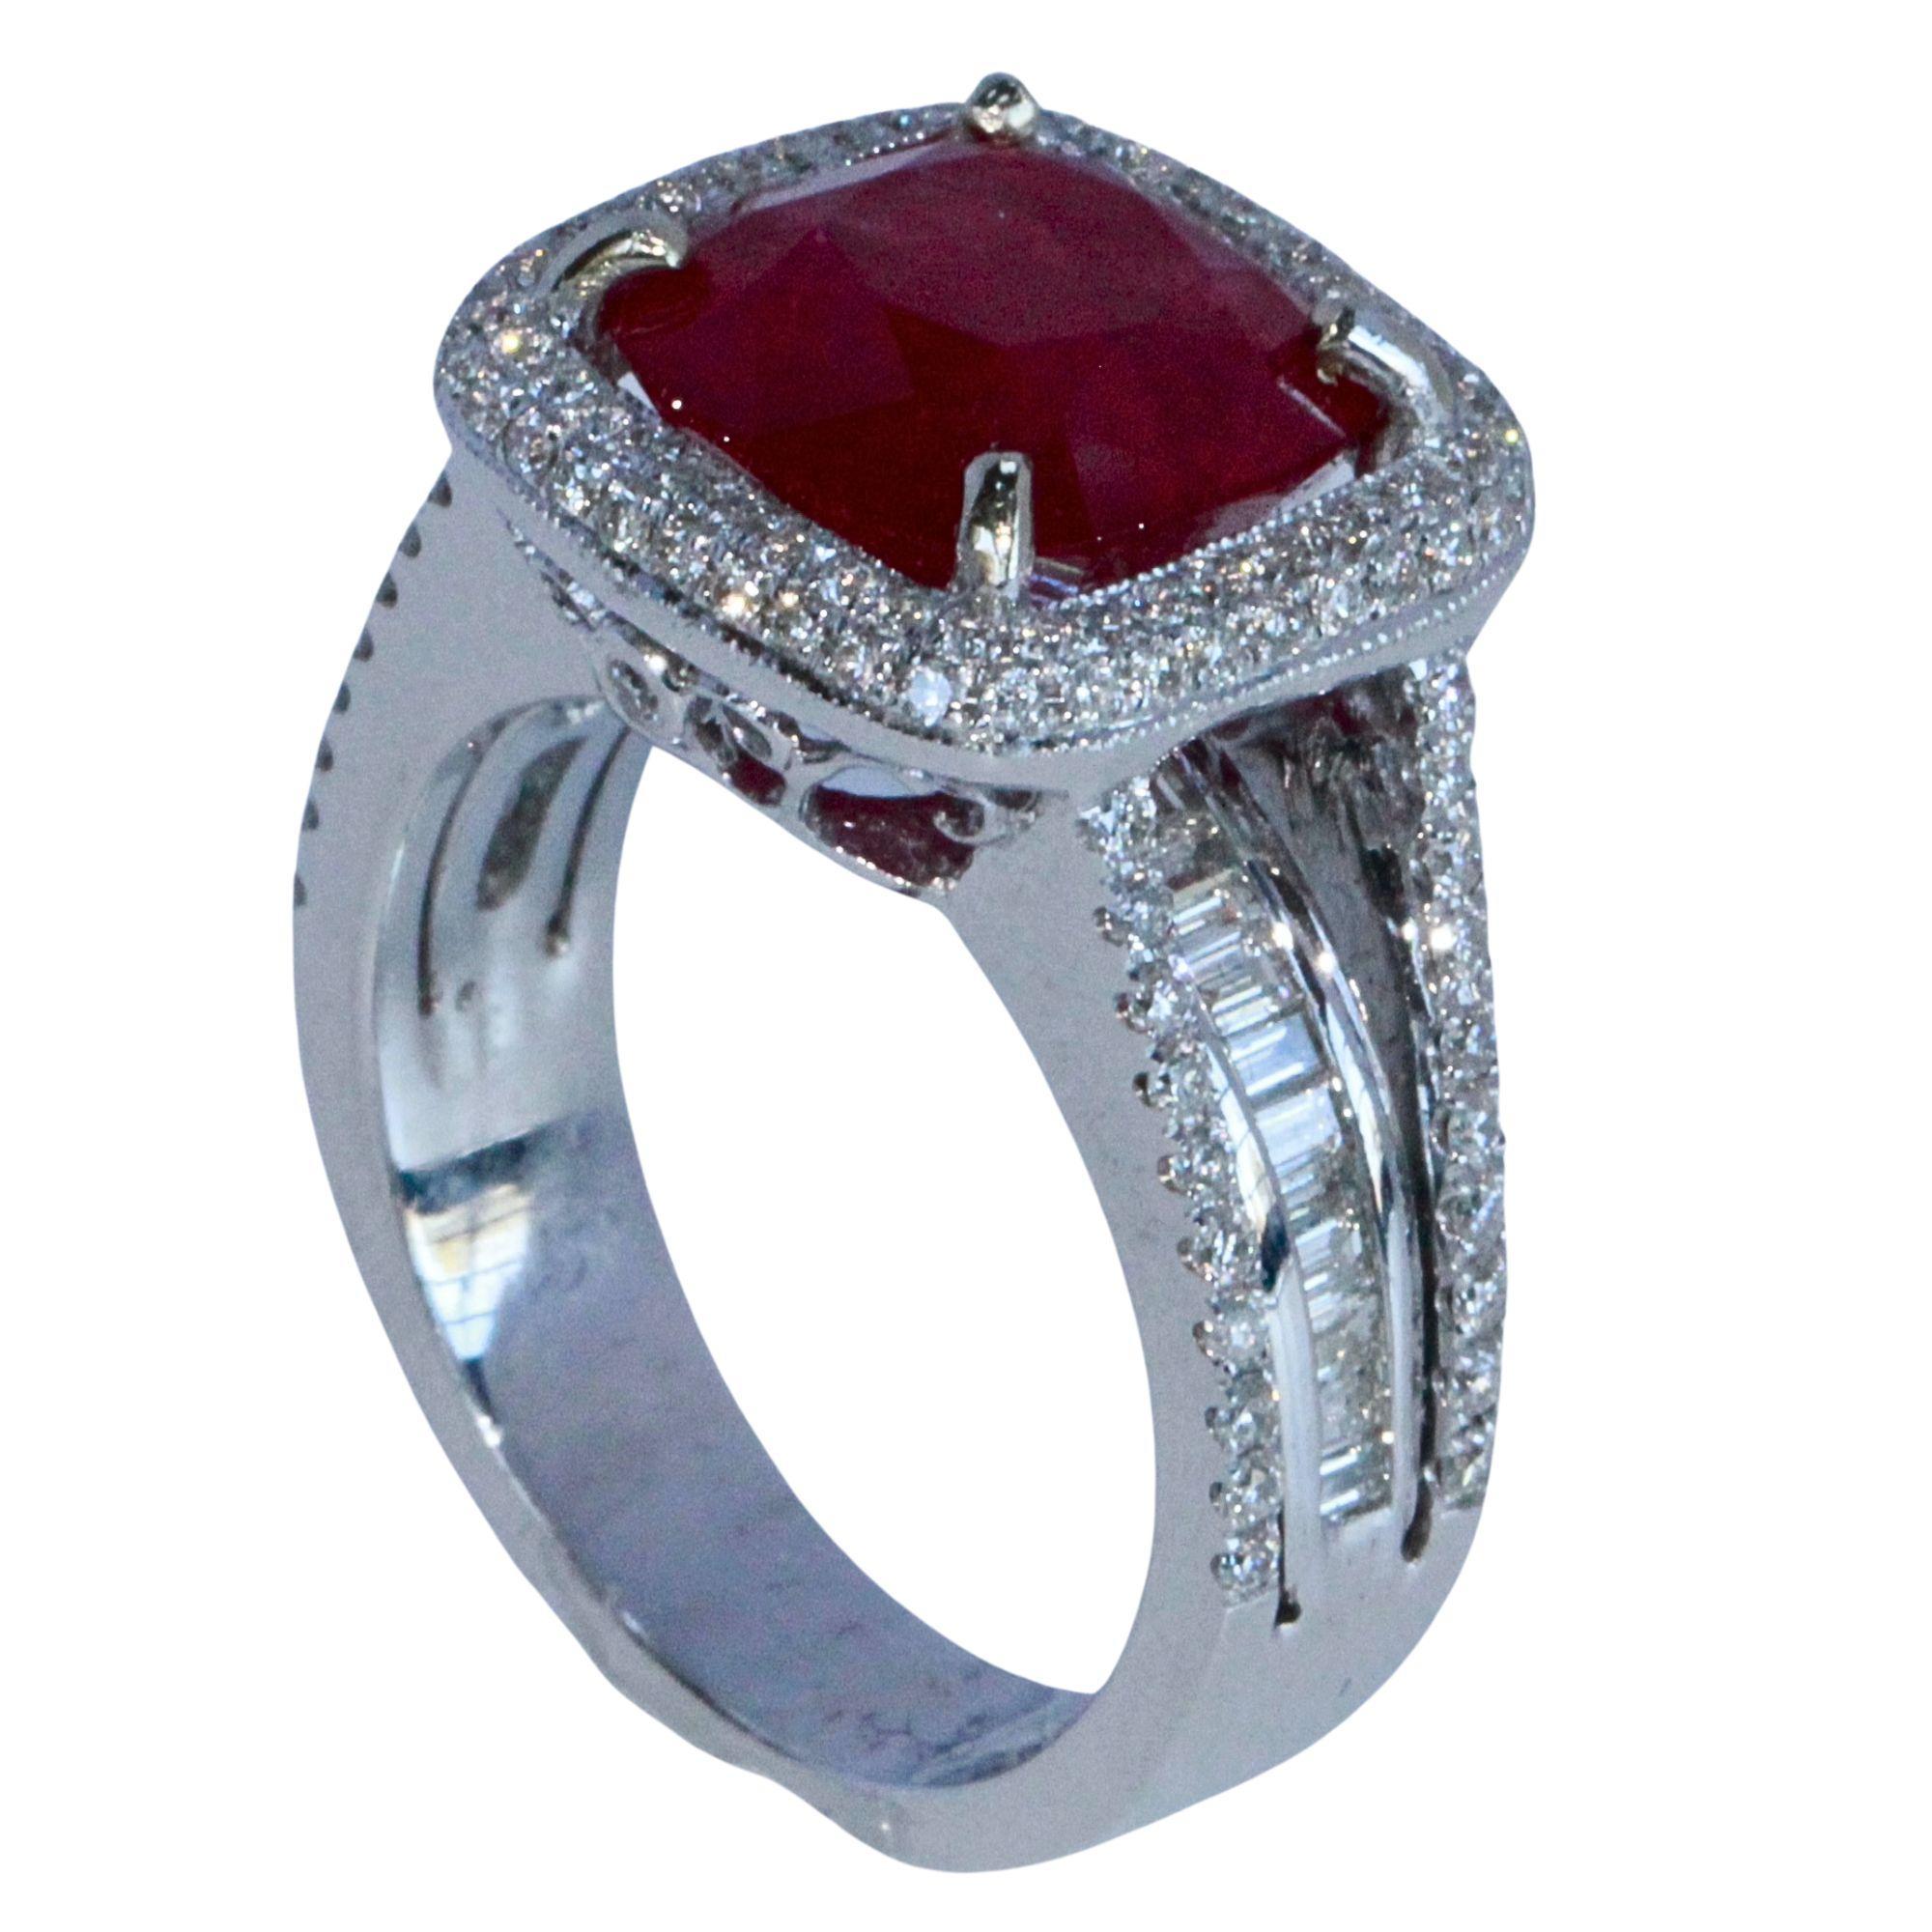 Gönnen Sie sich Luxus mit unserem 18-karätigen Ring mit Diamanten und Rubinen. Dieses exquisite Stück aus Weißgold besteht aus 1,12 Karat Diamanten und einem Rubin von 5,49 Karat. In ausgezeichnetem Zustand und mit Markierungen verziert, ist dieser